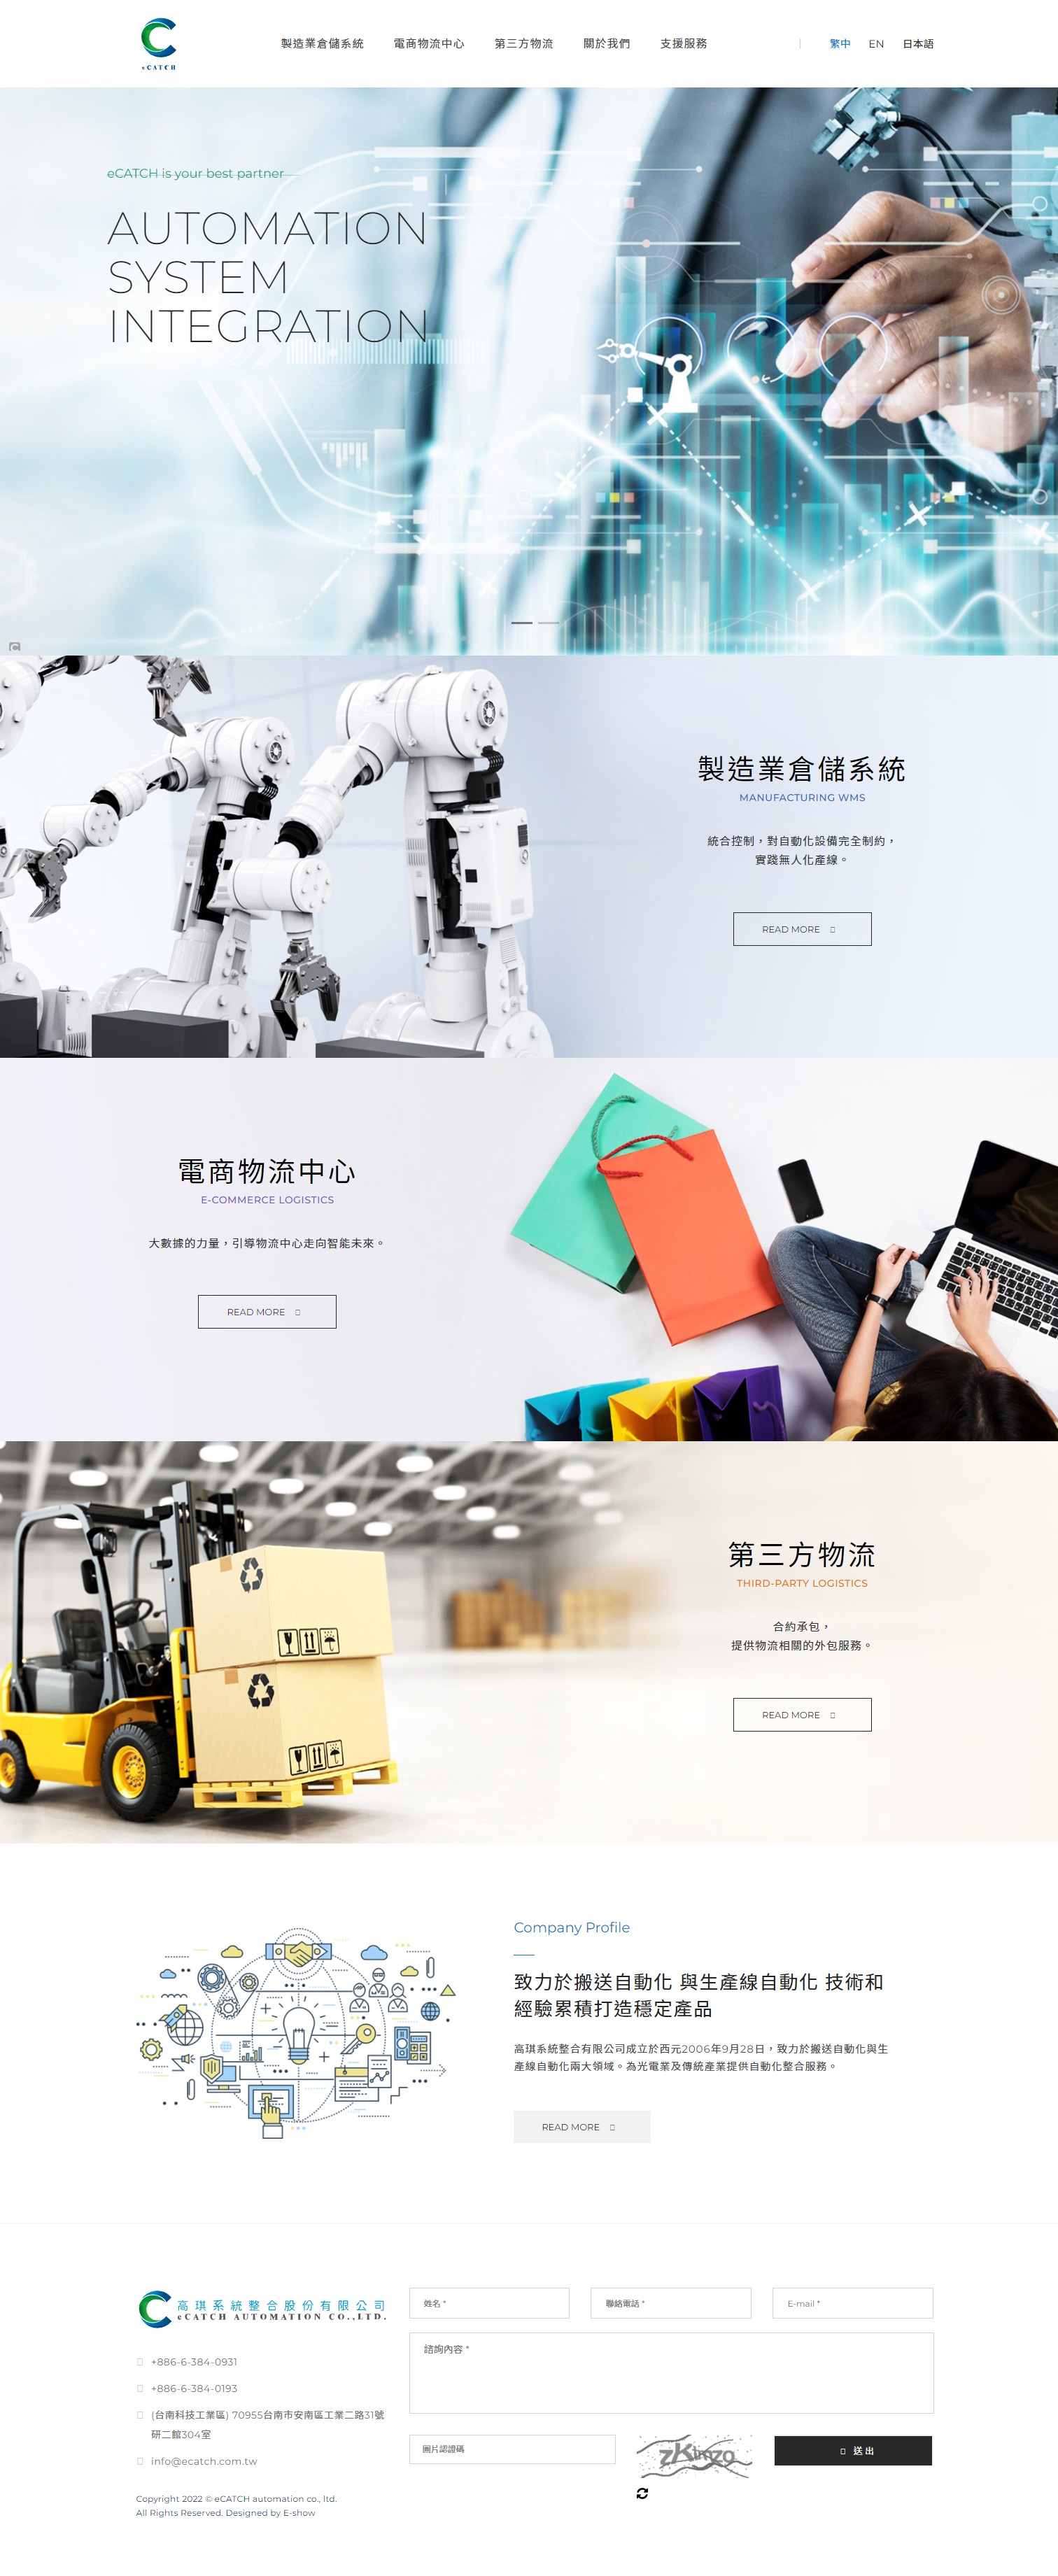 台南網頁設計公司推薦 | 意匠客戶案例 | 高琪系統整合